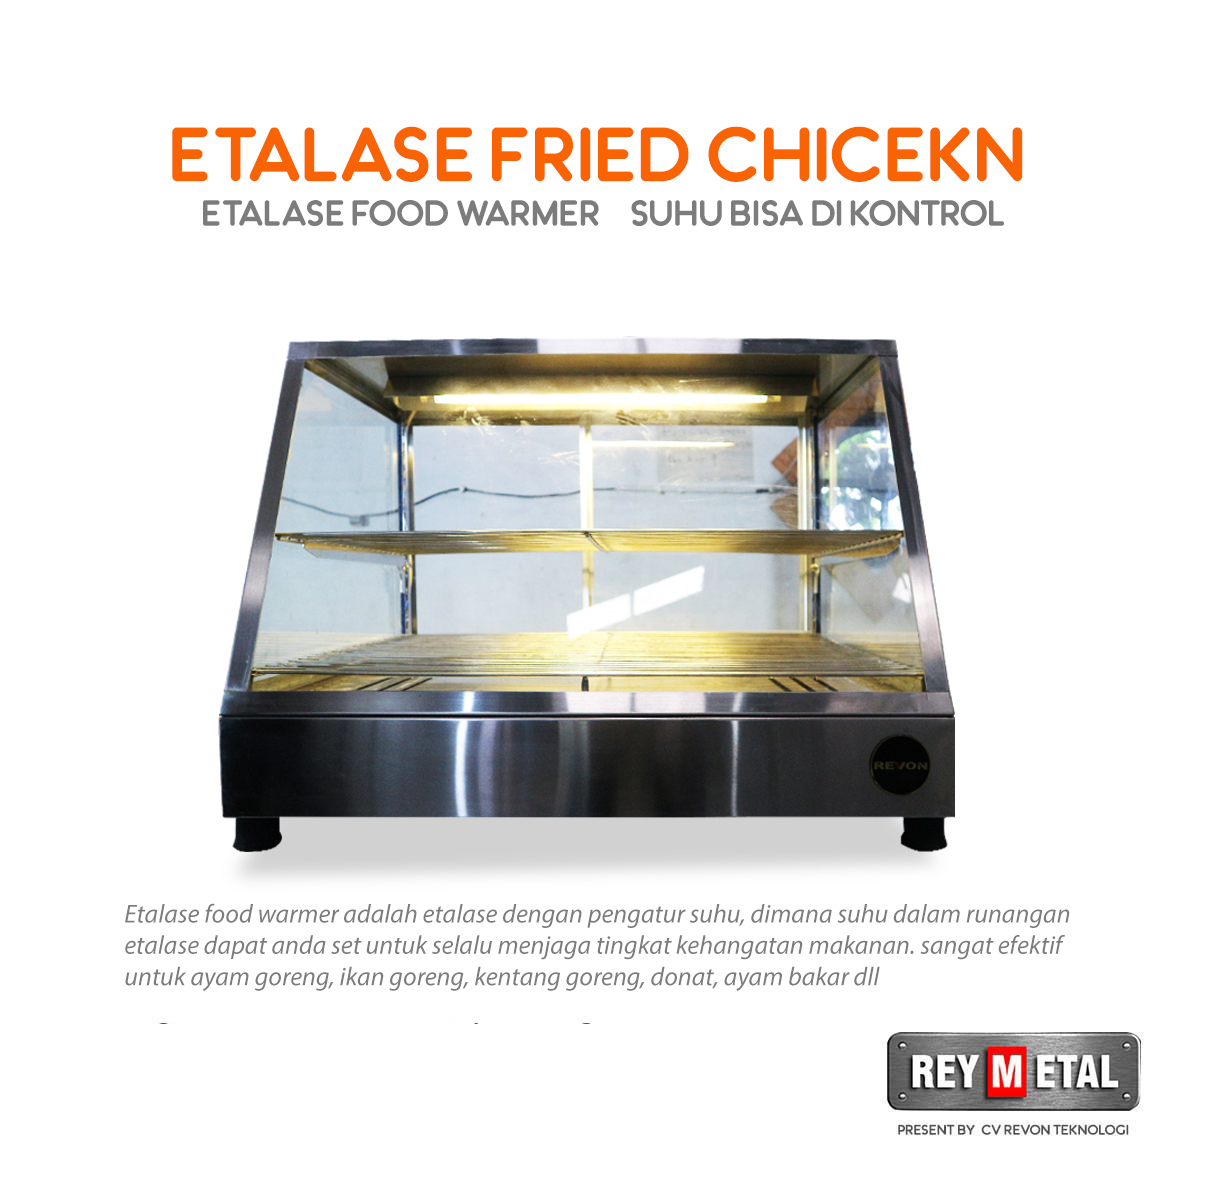 Jual Etalase Ayam Goreng Fried Chicken Yogyakarta - REYMETAL.COM